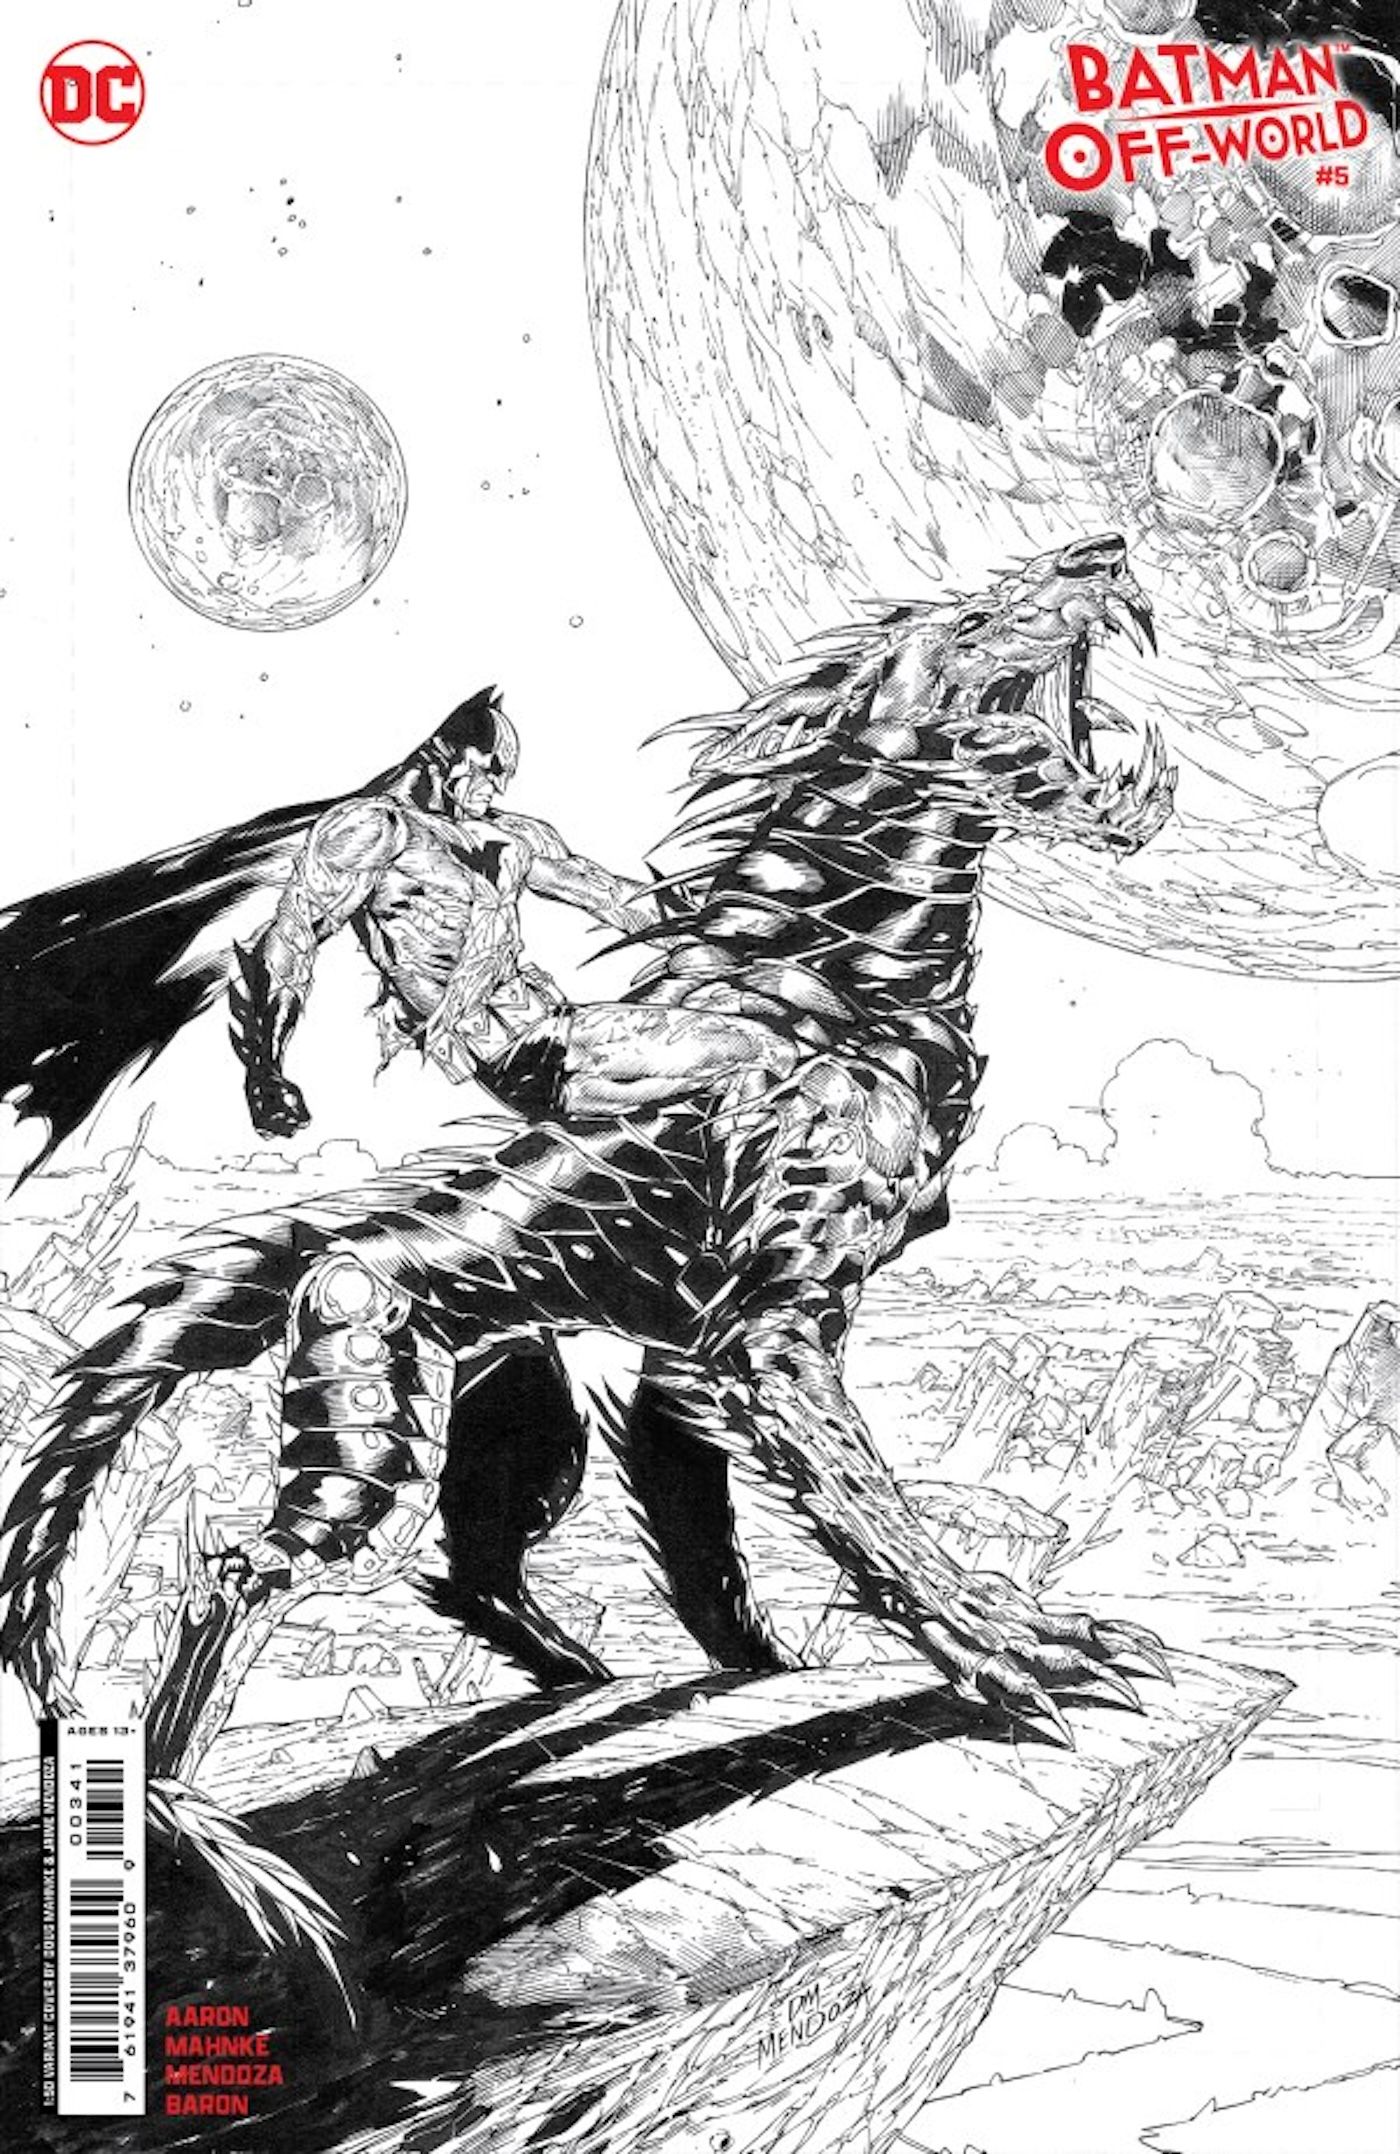 Una imagen en blanco y negro de Batman montado en una bestia alienígena en un planeta diferente.